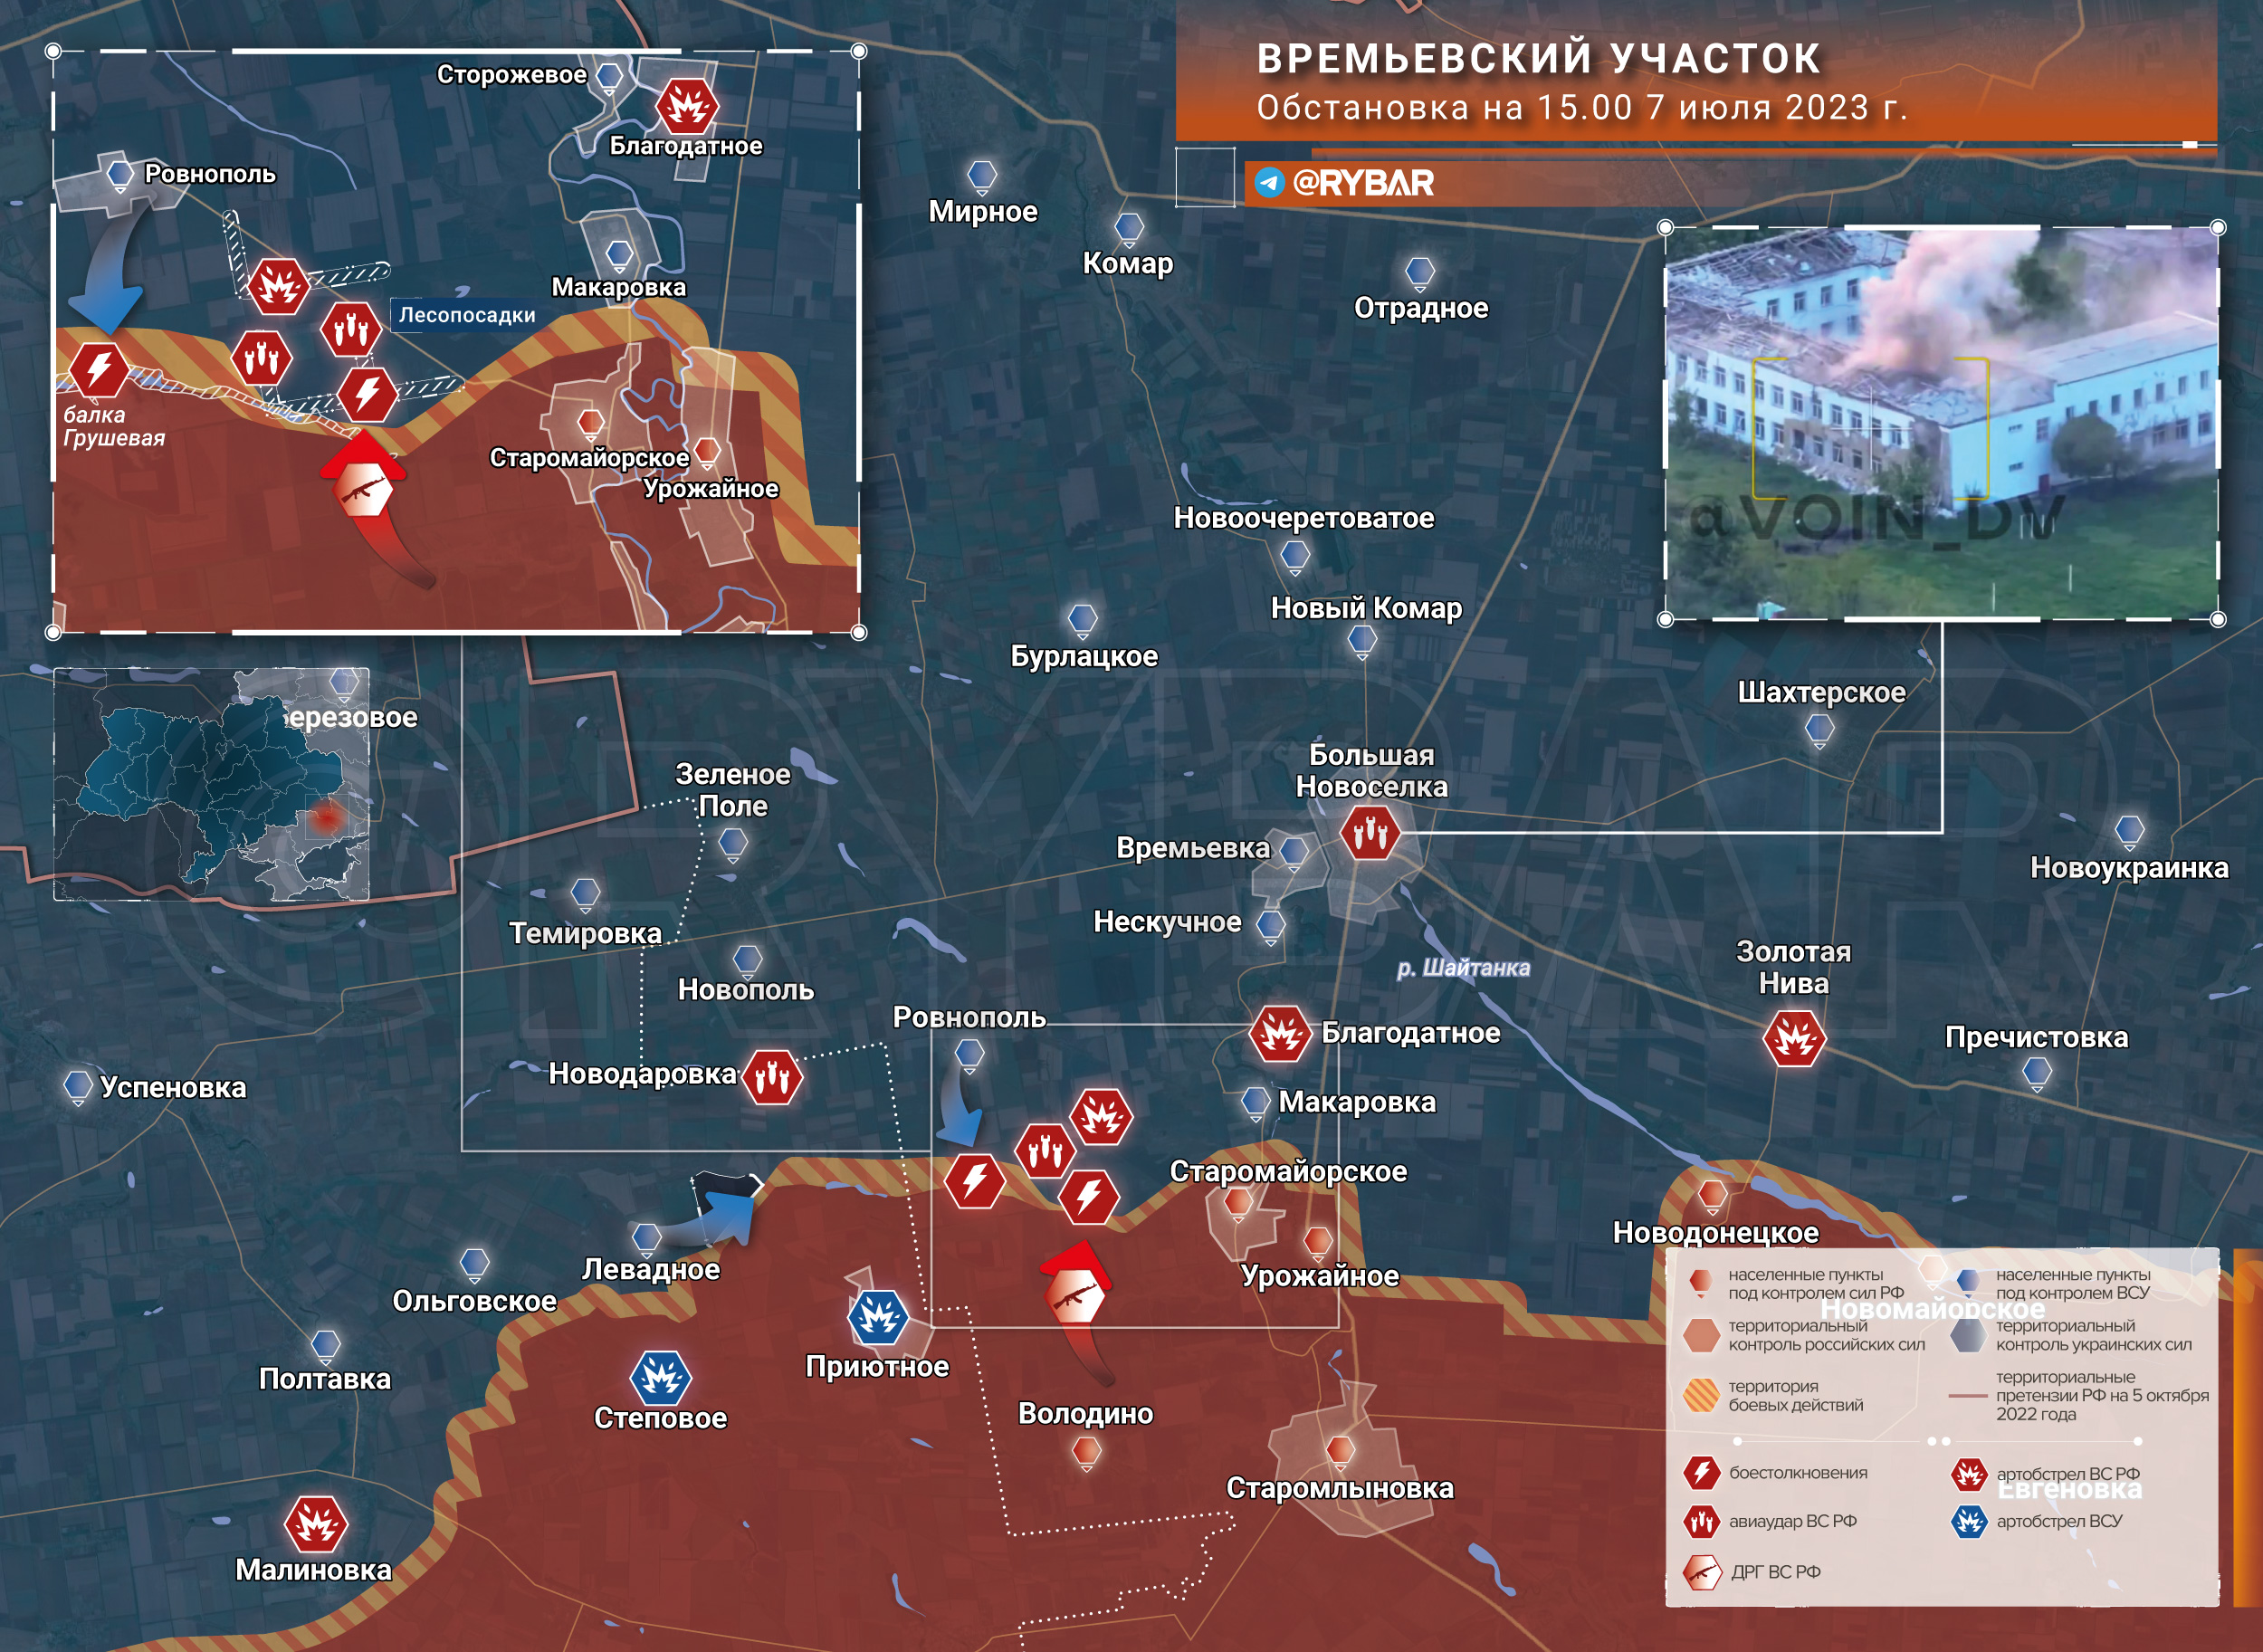 Карта захваченных территорий на украине россией